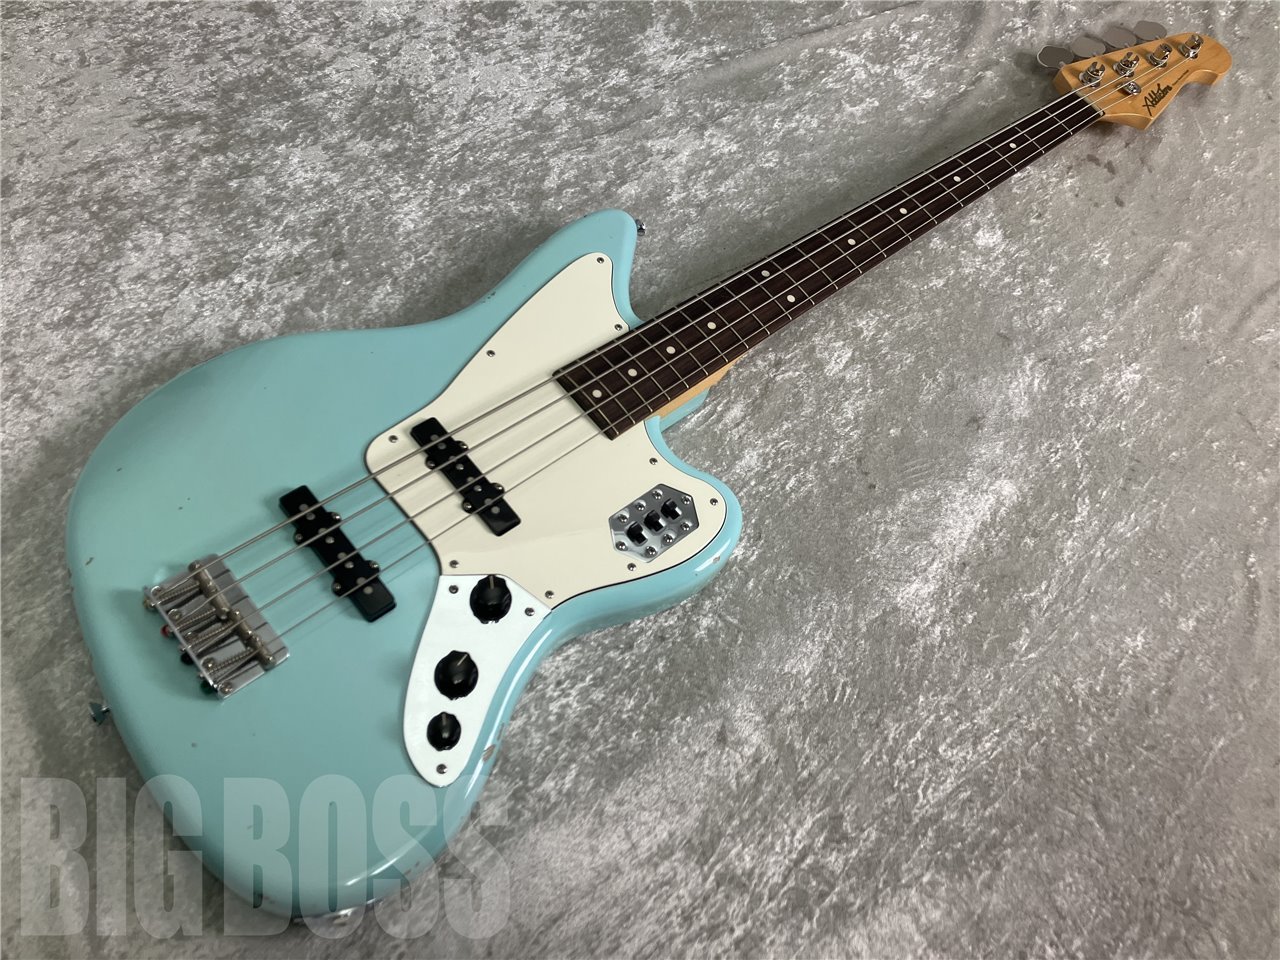 【即納可能】Addictone Custom Guitars (アディクトーンカスタムギターズ) Jaguar Bass(Sonic Blue Aged) お茶の水駅前店(東京)